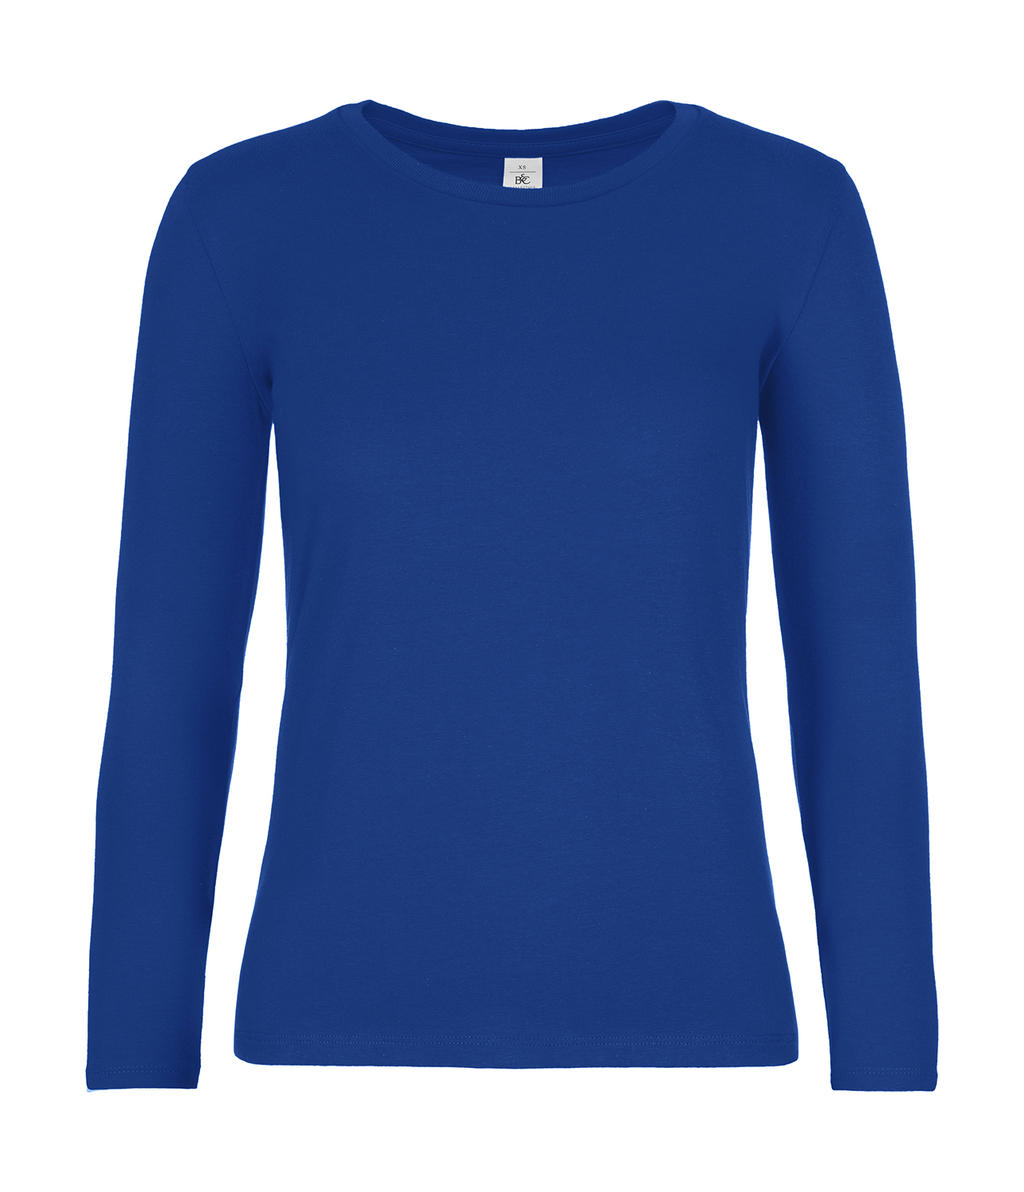 Dámske tričko s dlhými rukávmi #E190 - royal blue